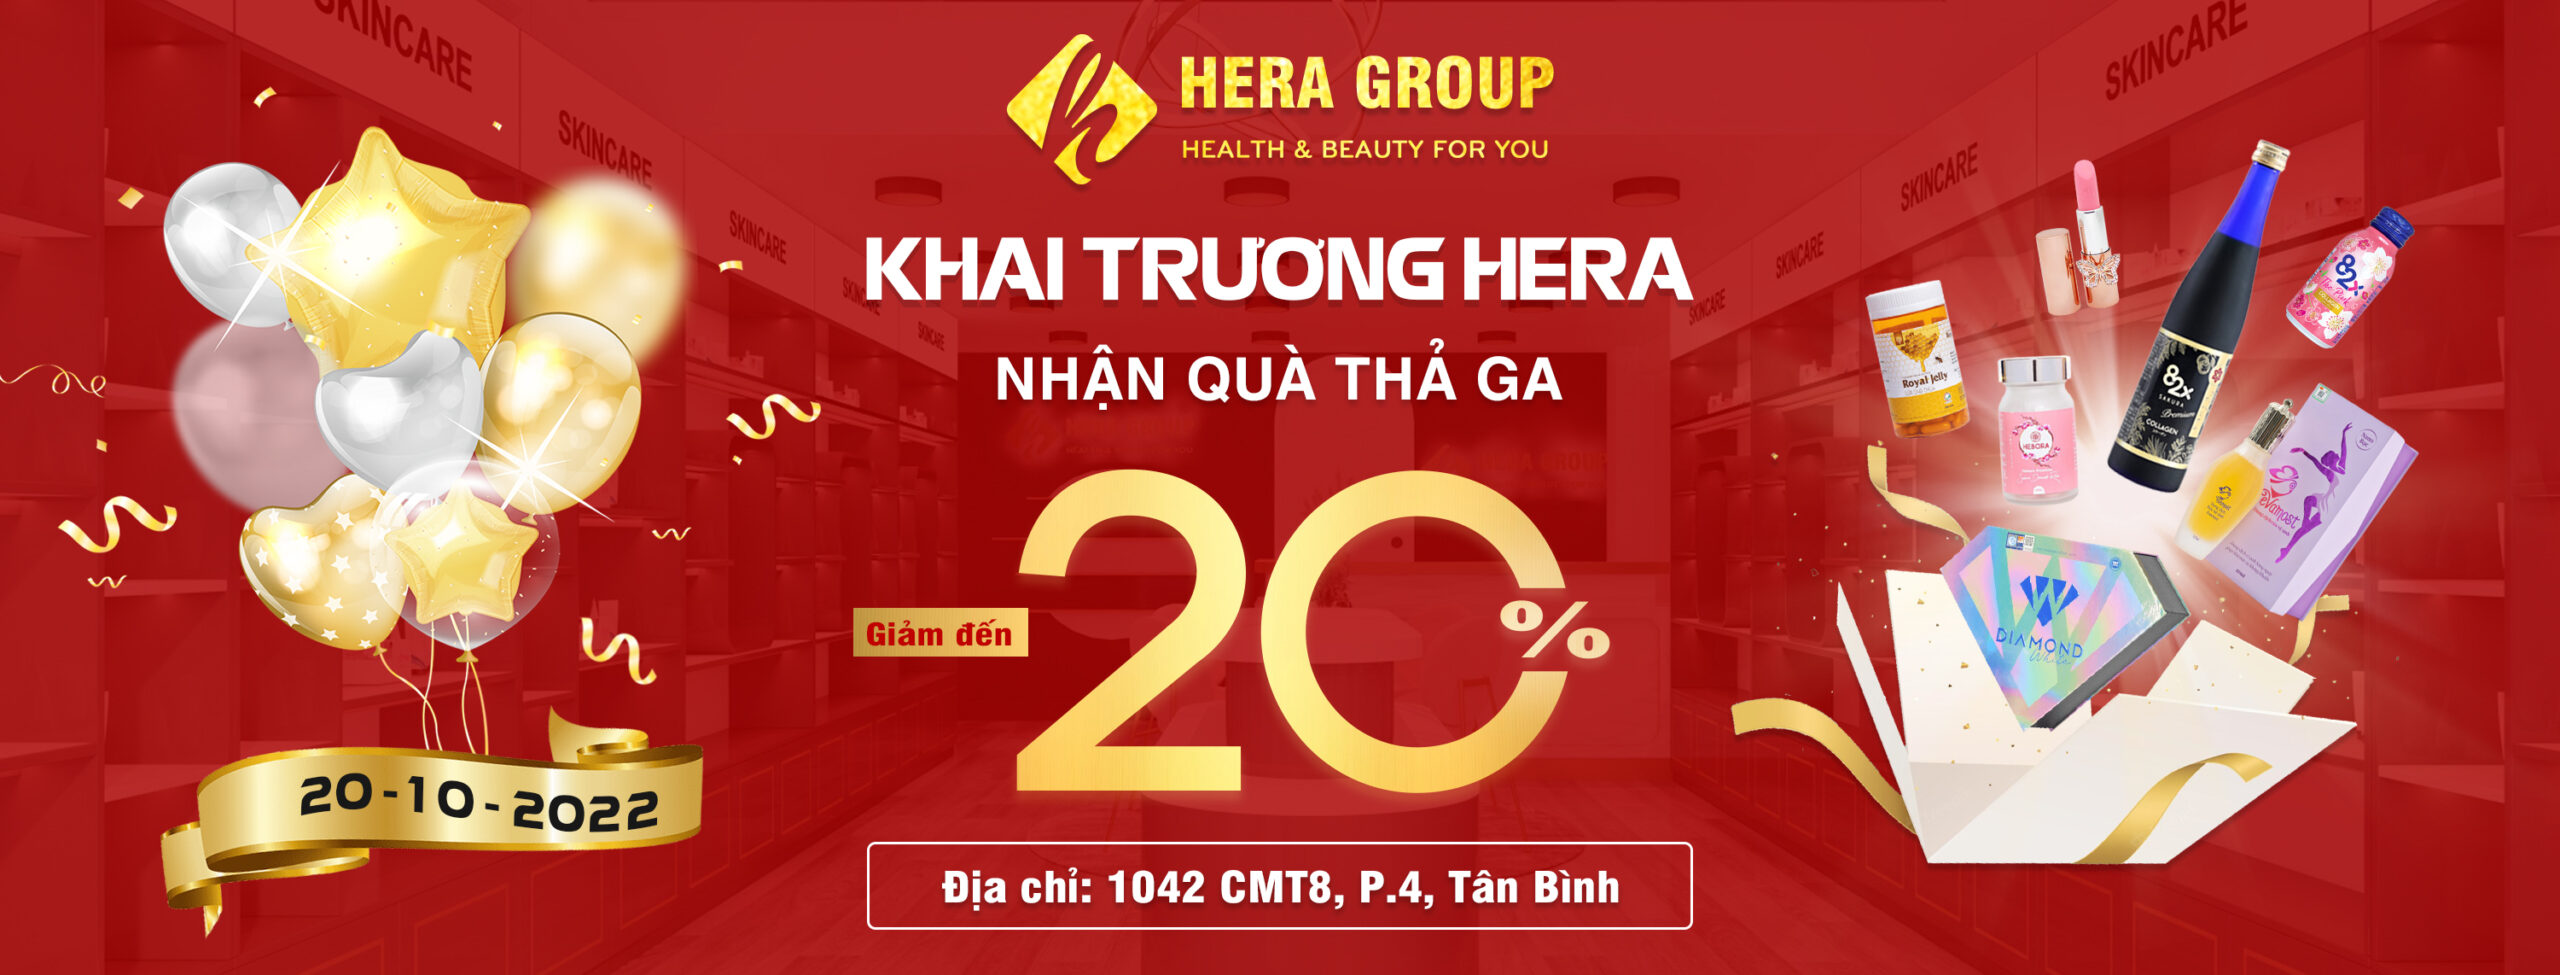 Mỹ Phẩm Hera 1 Shop Chuyên Cung Cấp Sỉ & Lẻ Các Dòng Mỹ Phẩm Làm Đẹp Chất Lượng Tại Việt Nam.